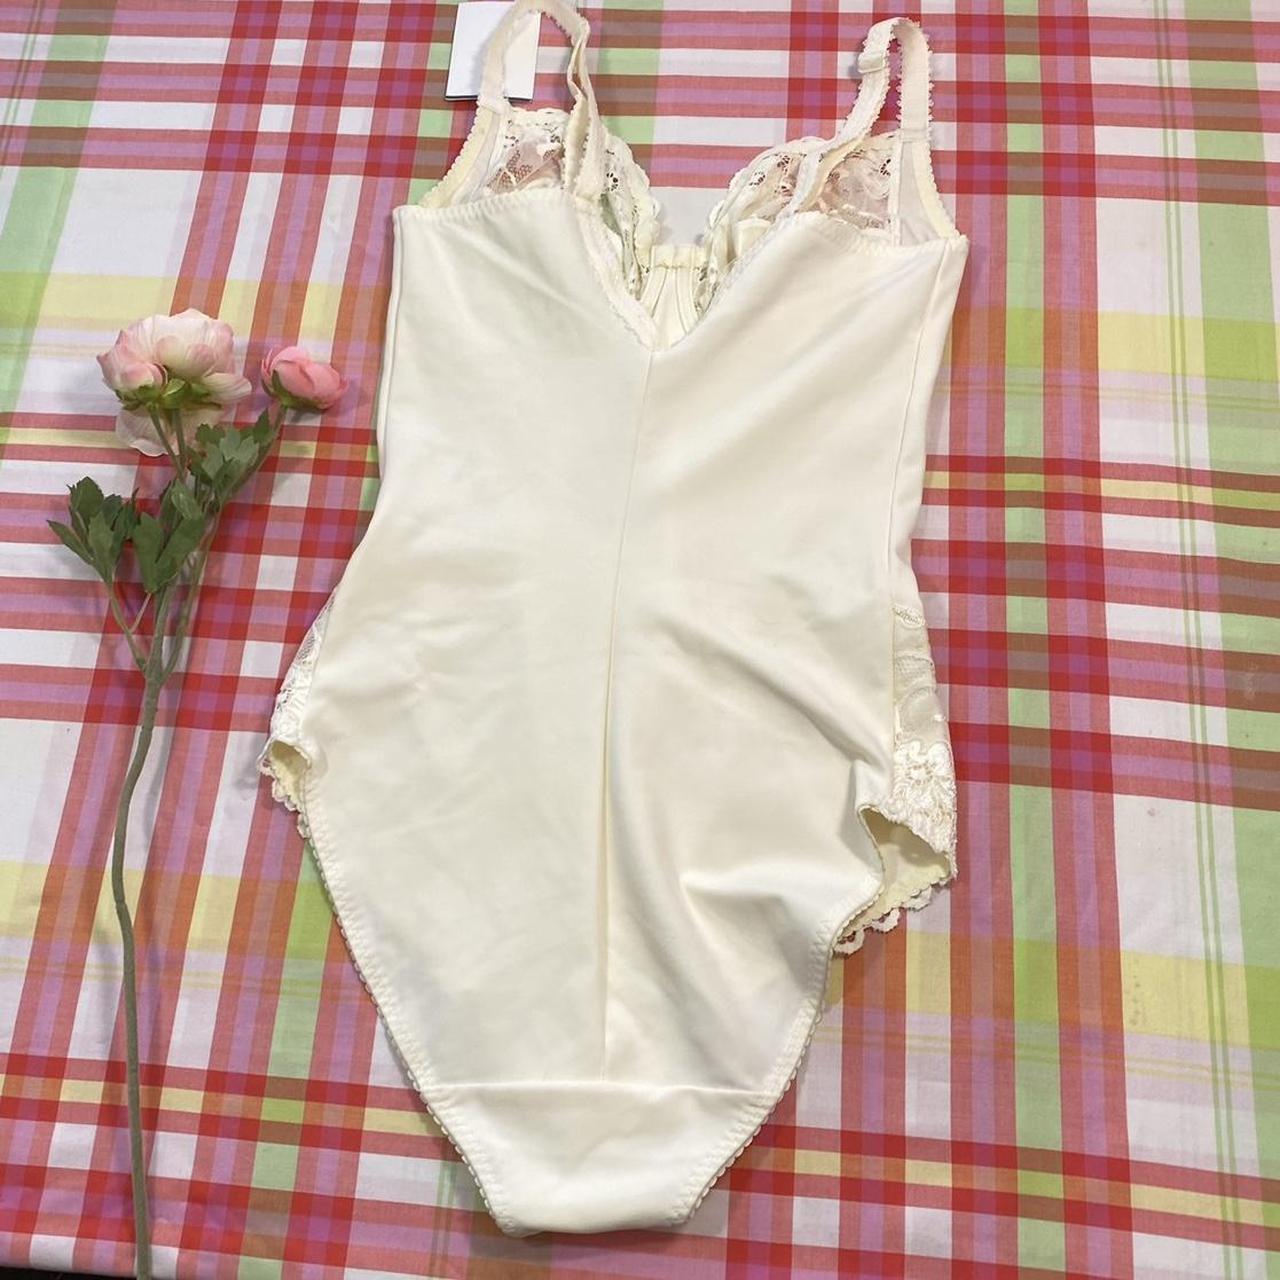 Women's White and Cream Underwear | Depop